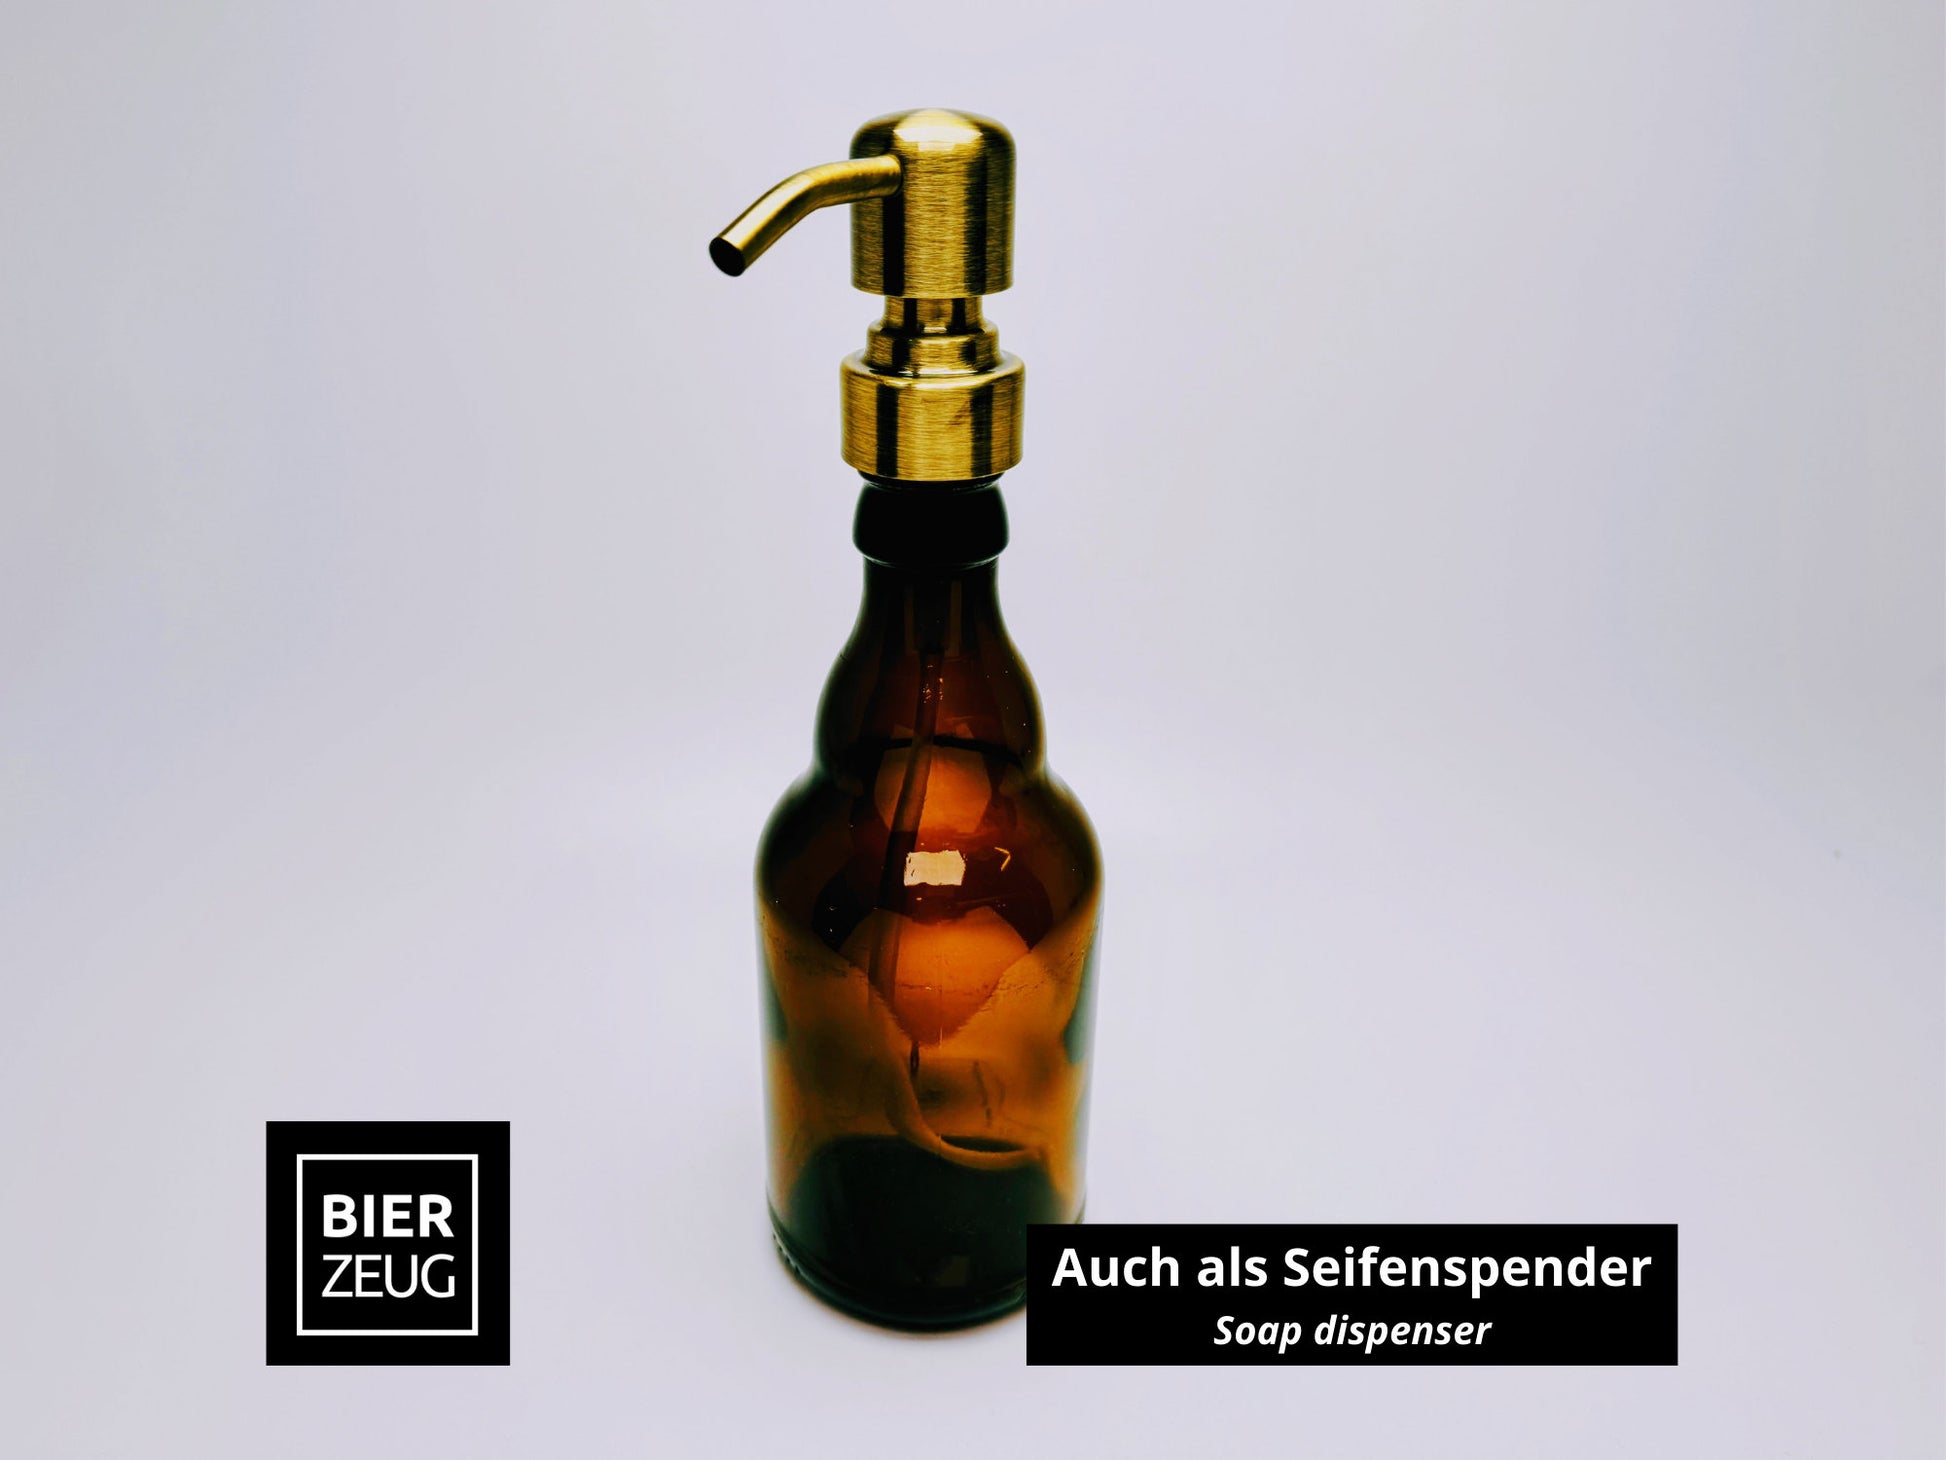 Öllampe aus Steini / Stubbi Bierflasche - Handgemacht - Upcycling - Windlicht für Balkon & Garten